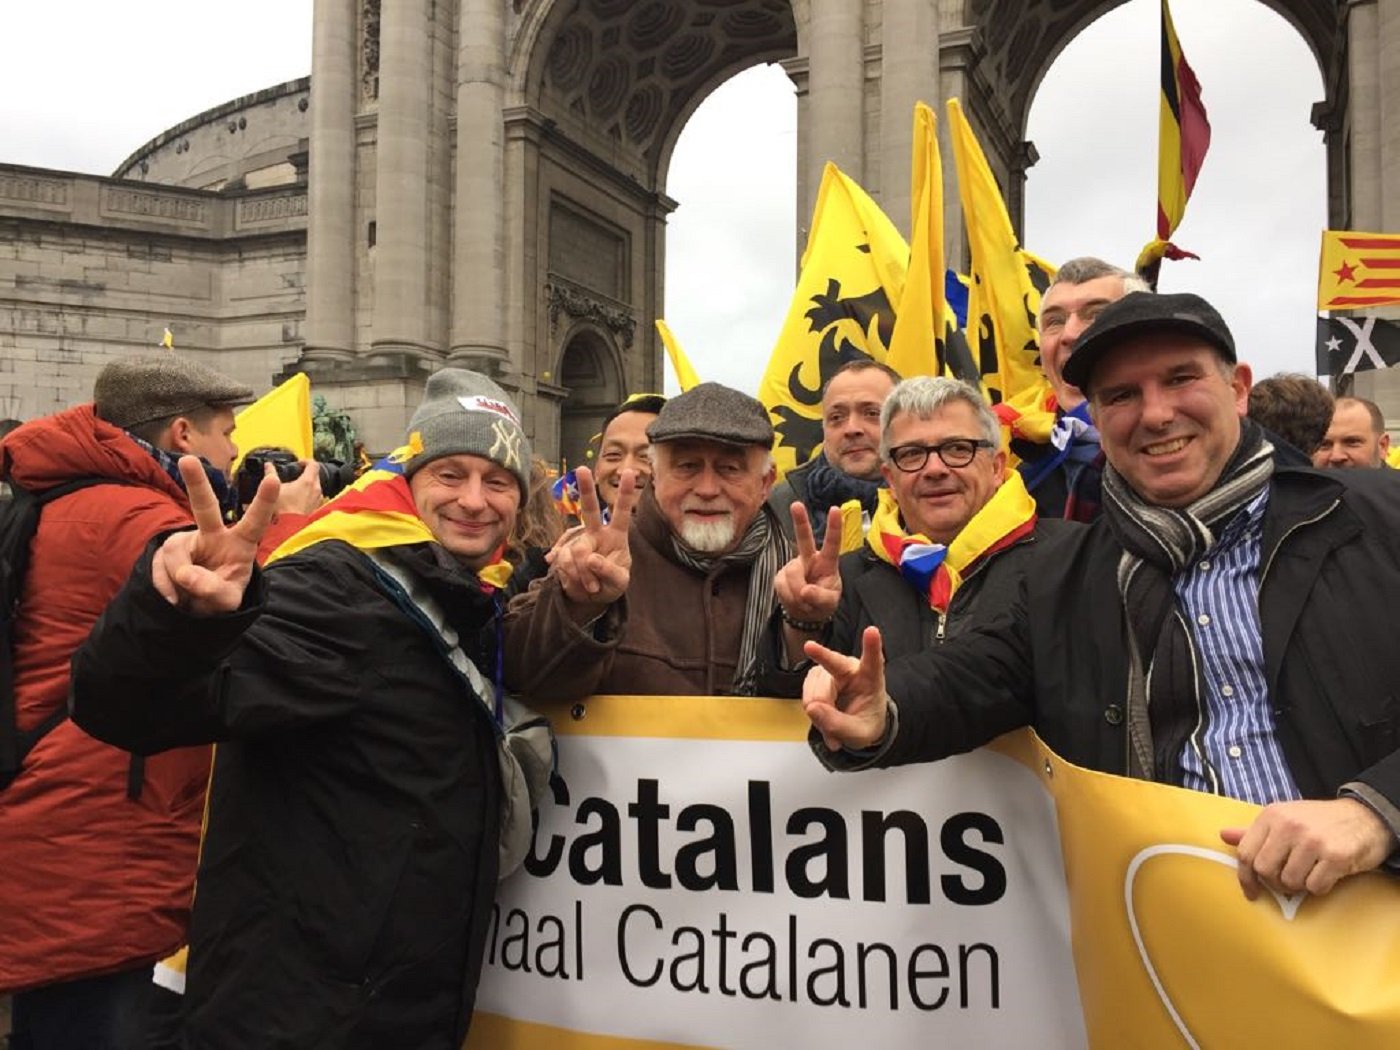 El presidente del Parlamento flamenco: "Puigdemont no es un criminal, es el presidente"